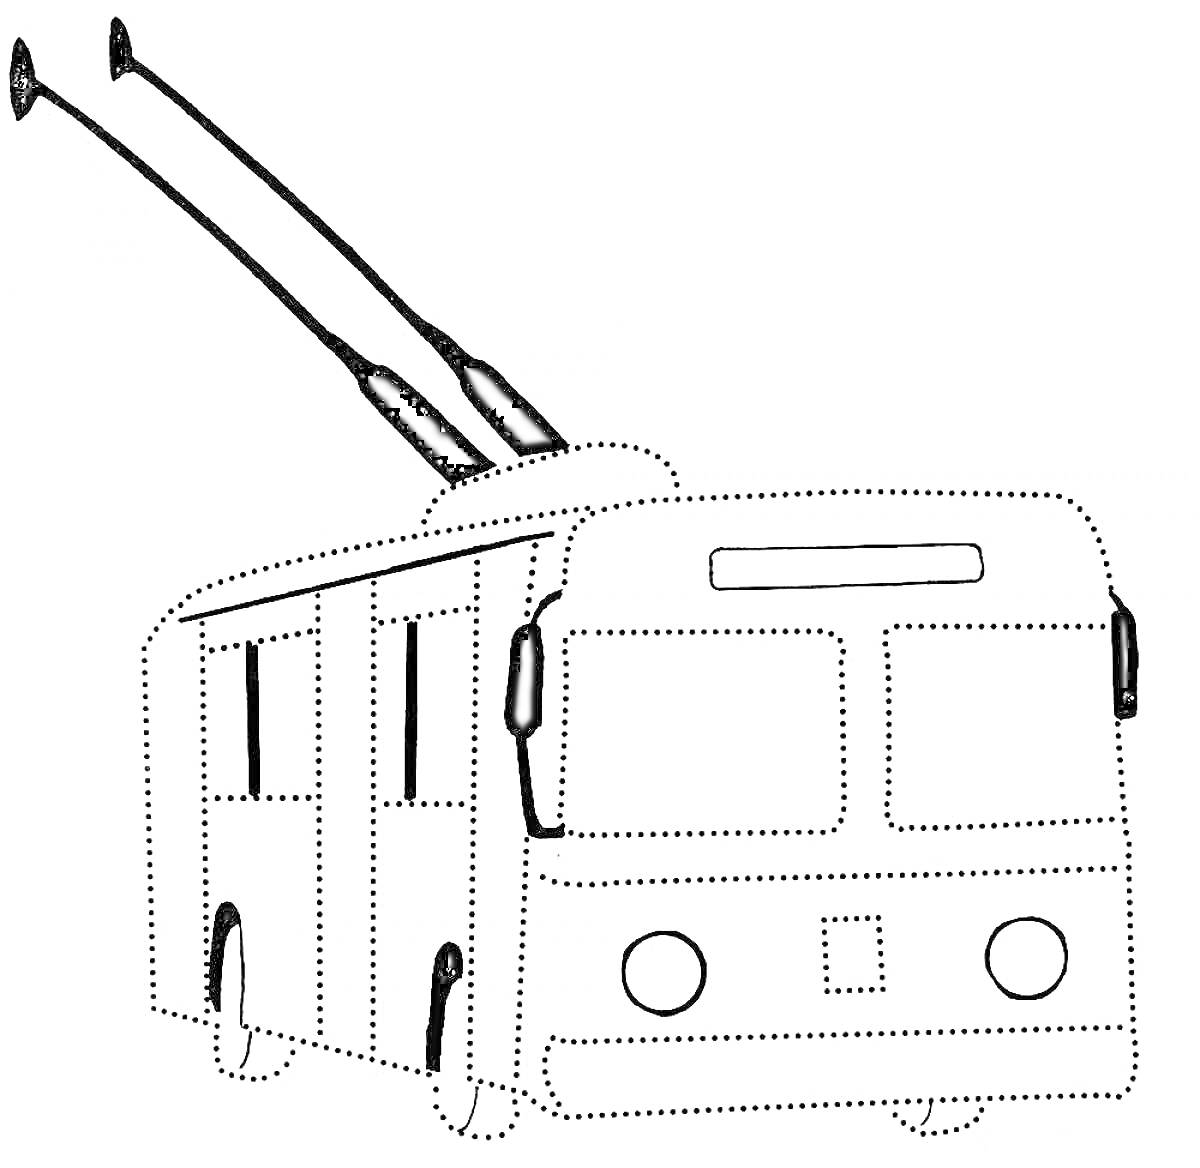 Троллейбус с антеннами, окнами и передними фарами